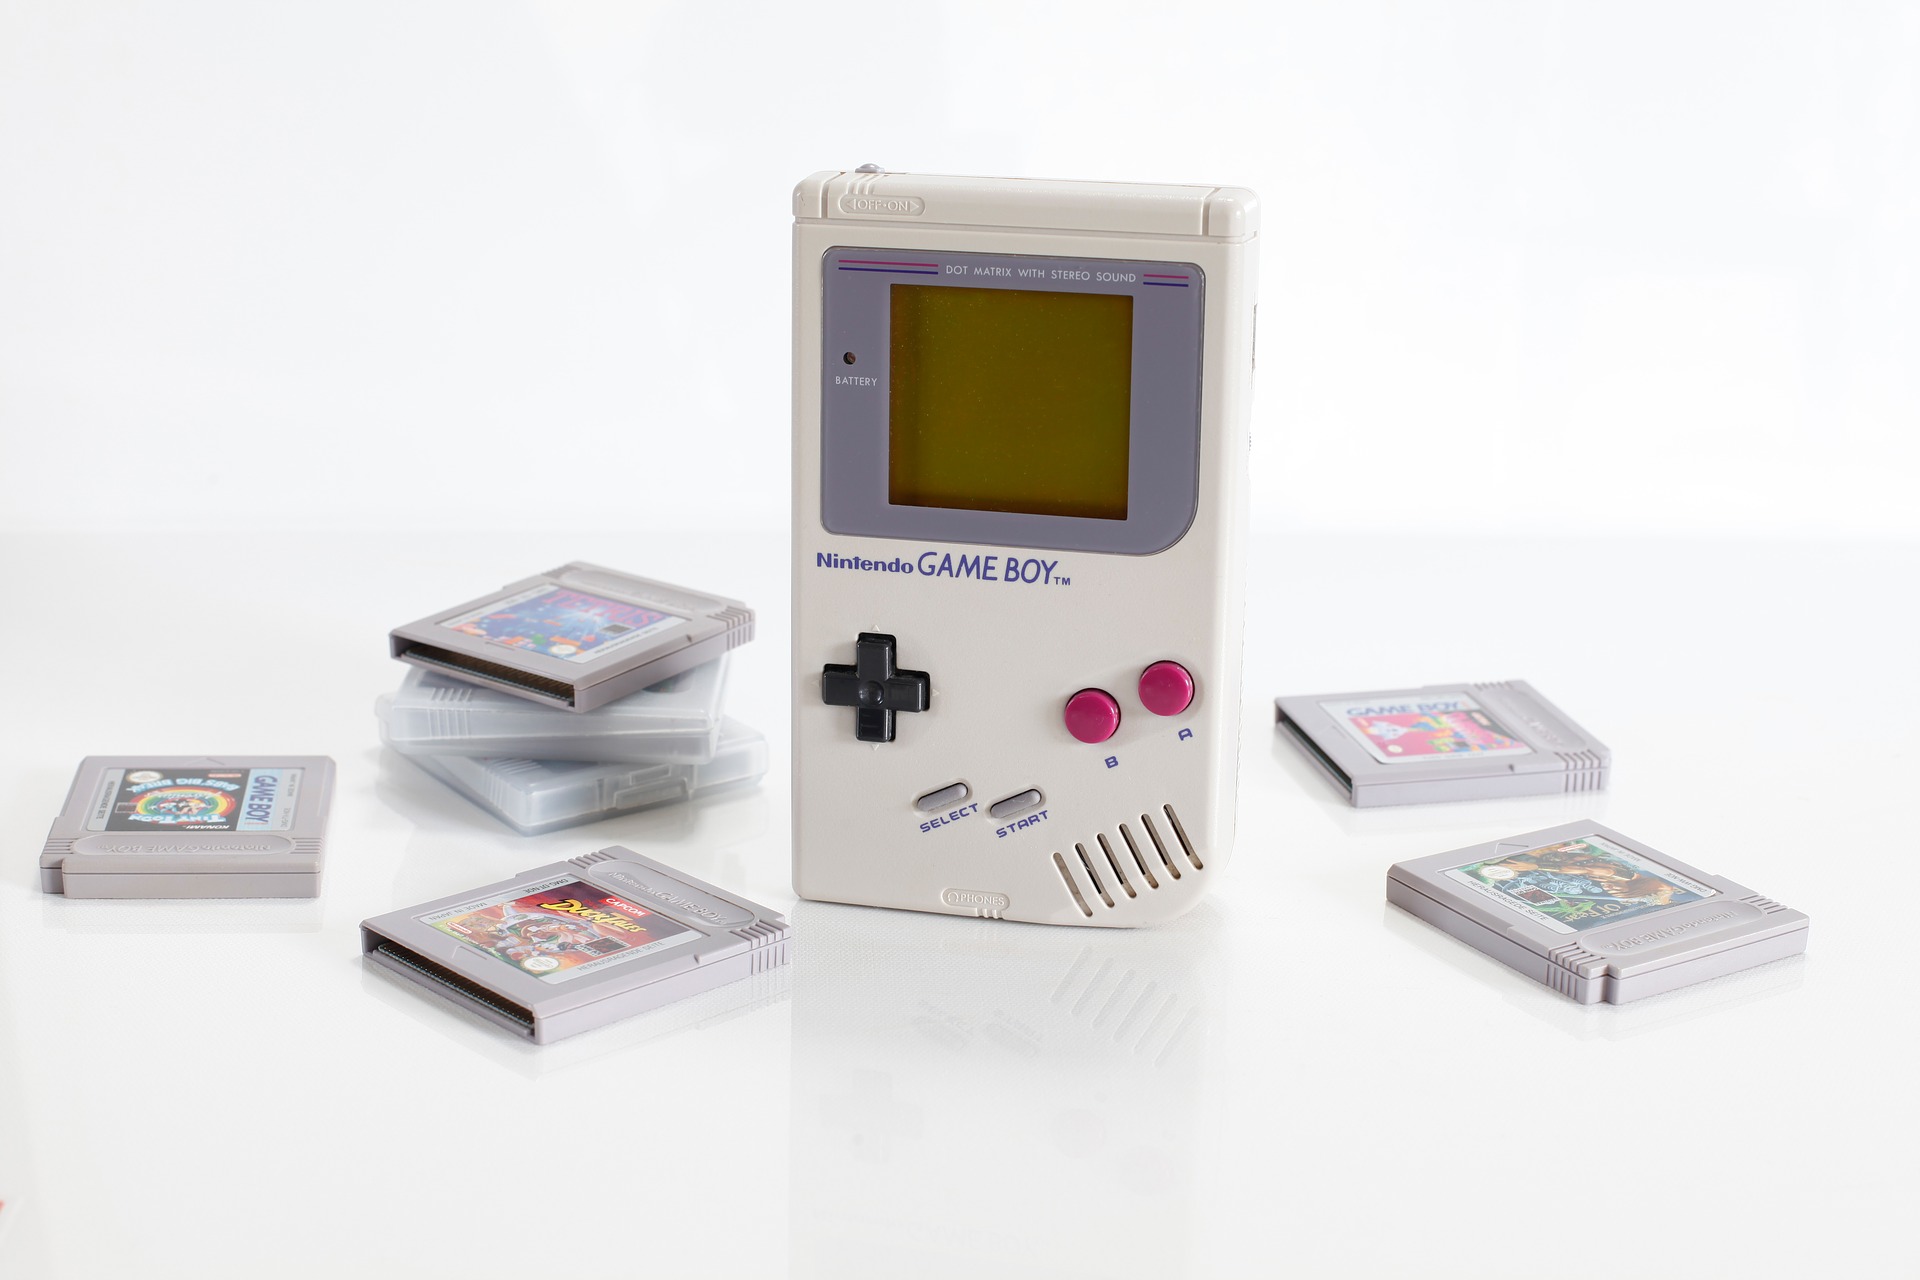 Prvi Nintendo umotvorina je Nintendovog inženjera Gunpeija Yokoija, koji je prije radio na tada inovativnoj igri Metroid za Nintendo Entertainment System (NES). Game Boy, koji je predstavljen u Japanu 21. travnja 1989. godine, je bila za to vrijeme malena 8-bitna konzola koja je podržavala kazete, a njen zeleni neosvijetljeni ekran je mogao prikazati četiri razina sive boje.